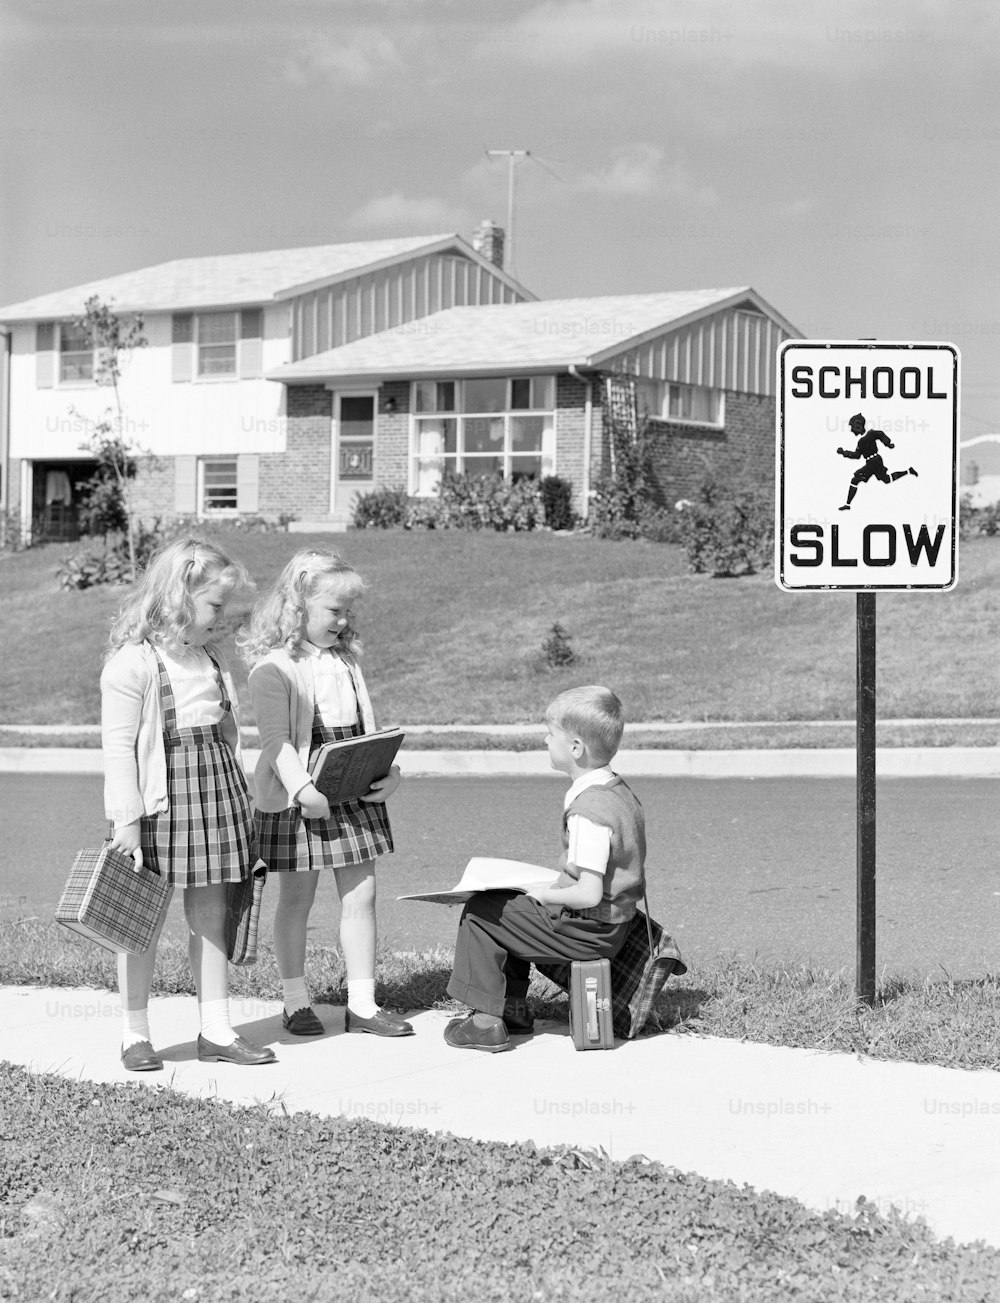 VEREINIGTE STAATEN - CIRCA 1950er Jahre: Zwei Mädchen gehen zur Schule, Junge sitzt auf einer Brotdose.